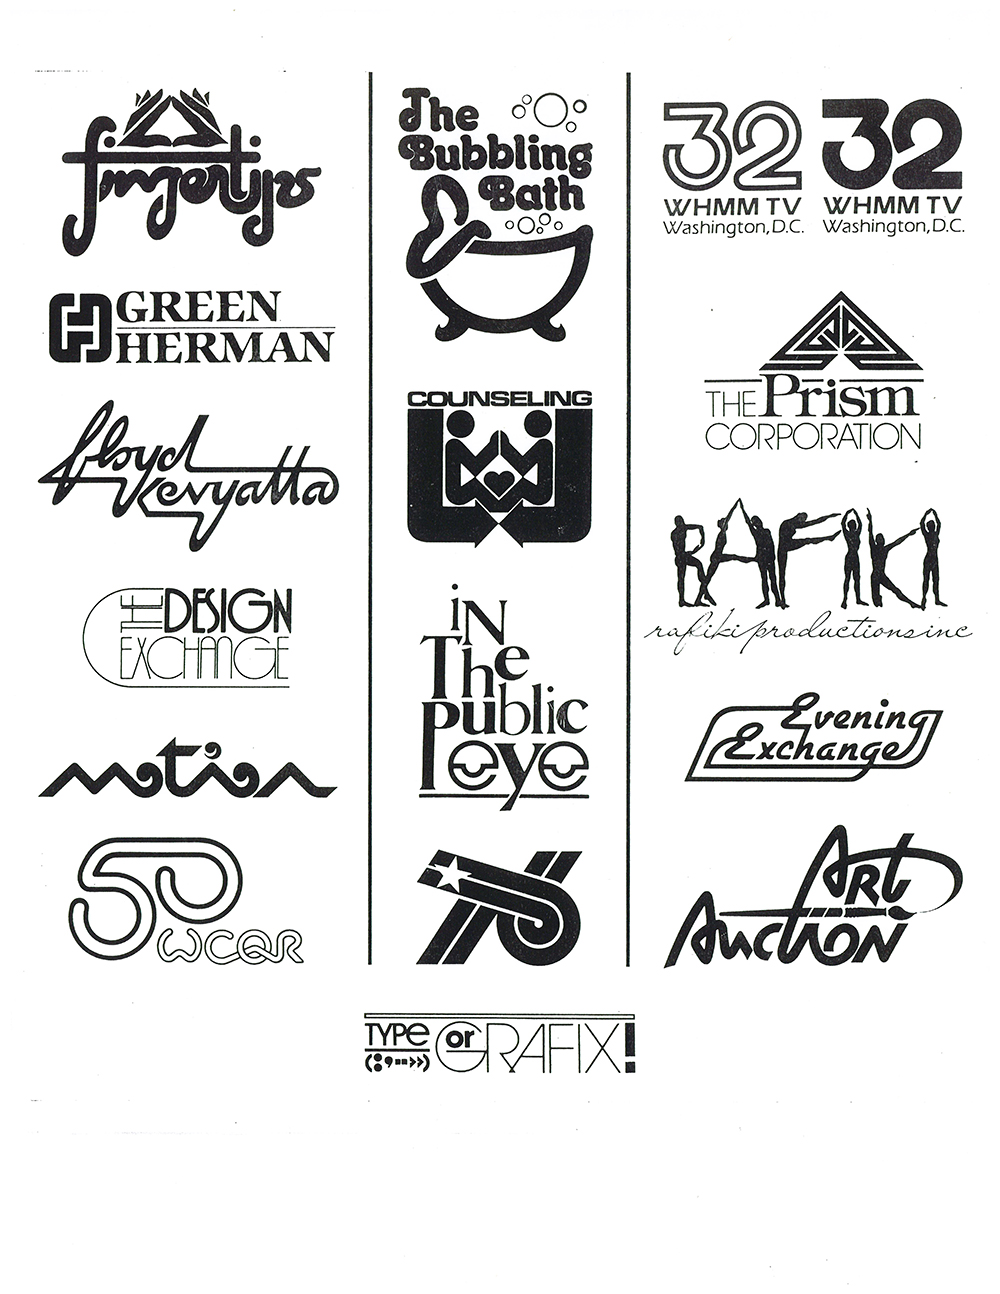 Logosheet of Miller’s hand drawn logos, 1974-1994.